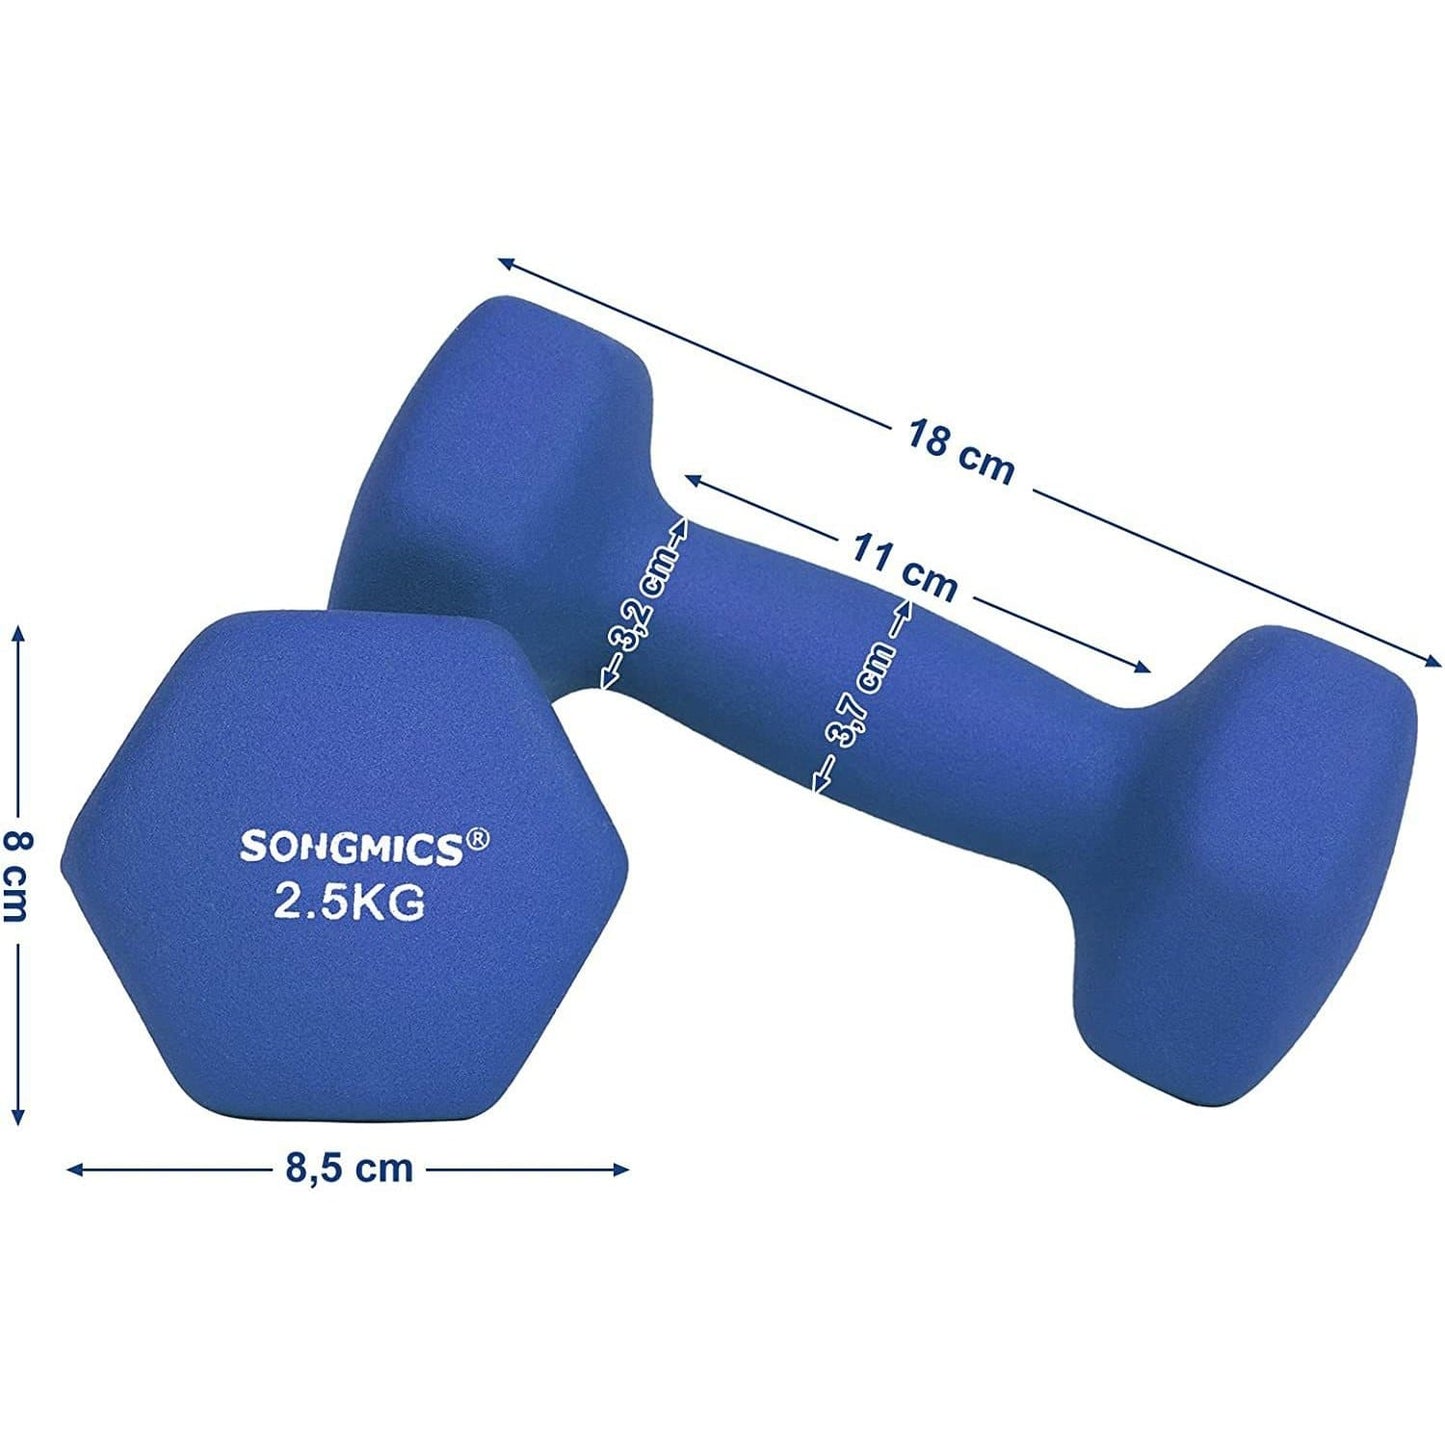 Nancy's Dumbbells Set - 2.5 kg per Dumbell - Blauwe Dumbells - Gewichten en Halters - 2 Stuks